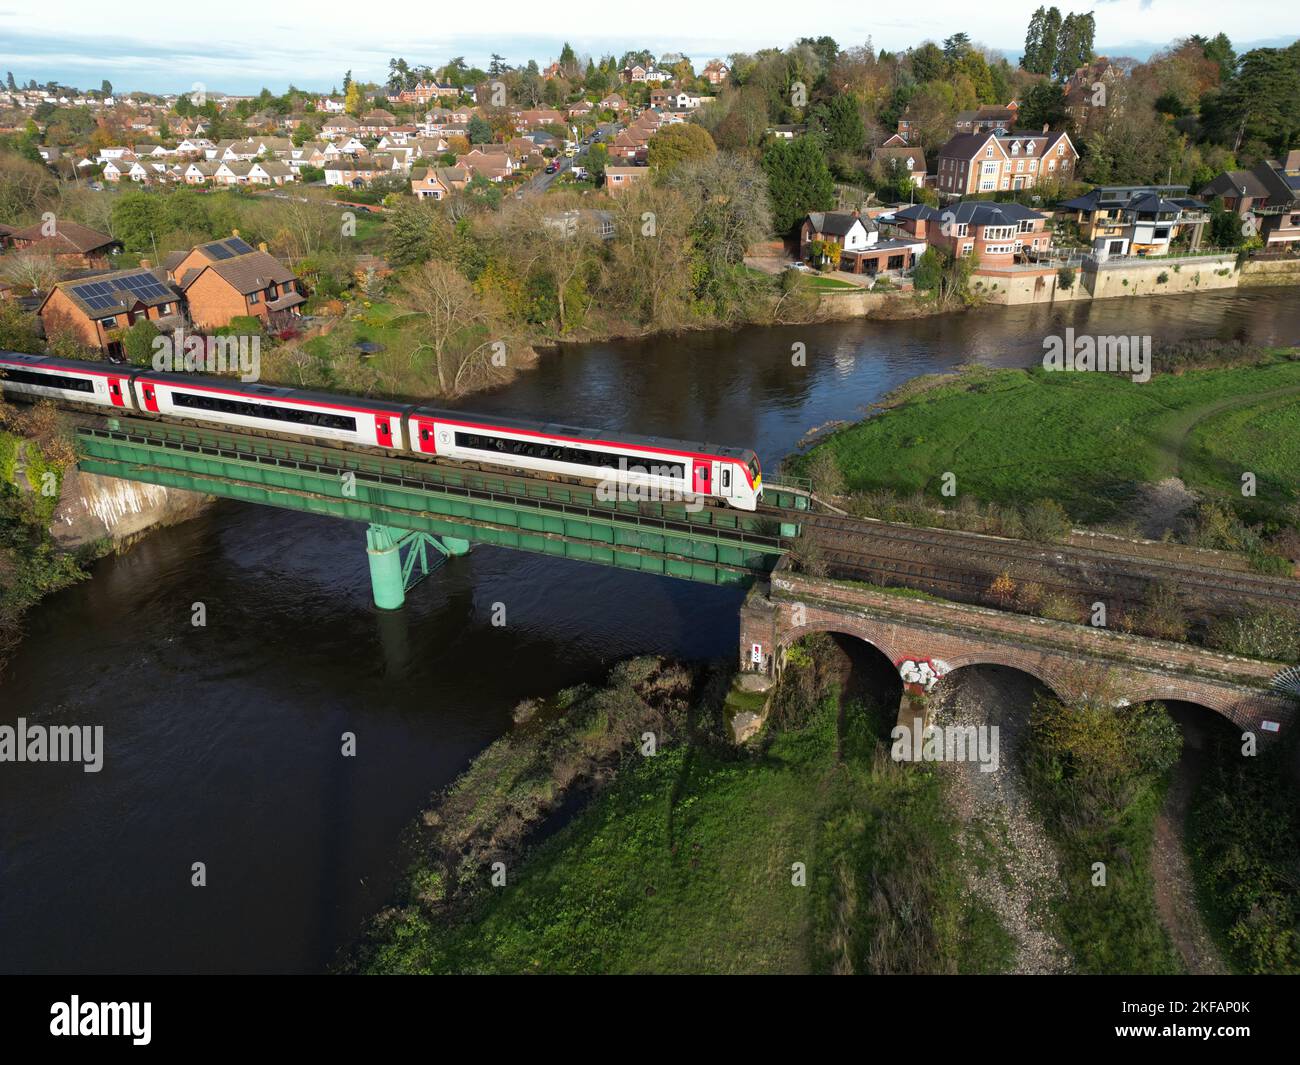 Hereford Herefordshire - Ein Zug des Typs Transport for Wales ( TFW ) überquert den Fluss Wye, der Hereford verlässt und nach Südwales fährt - November 2022 Stockfoto